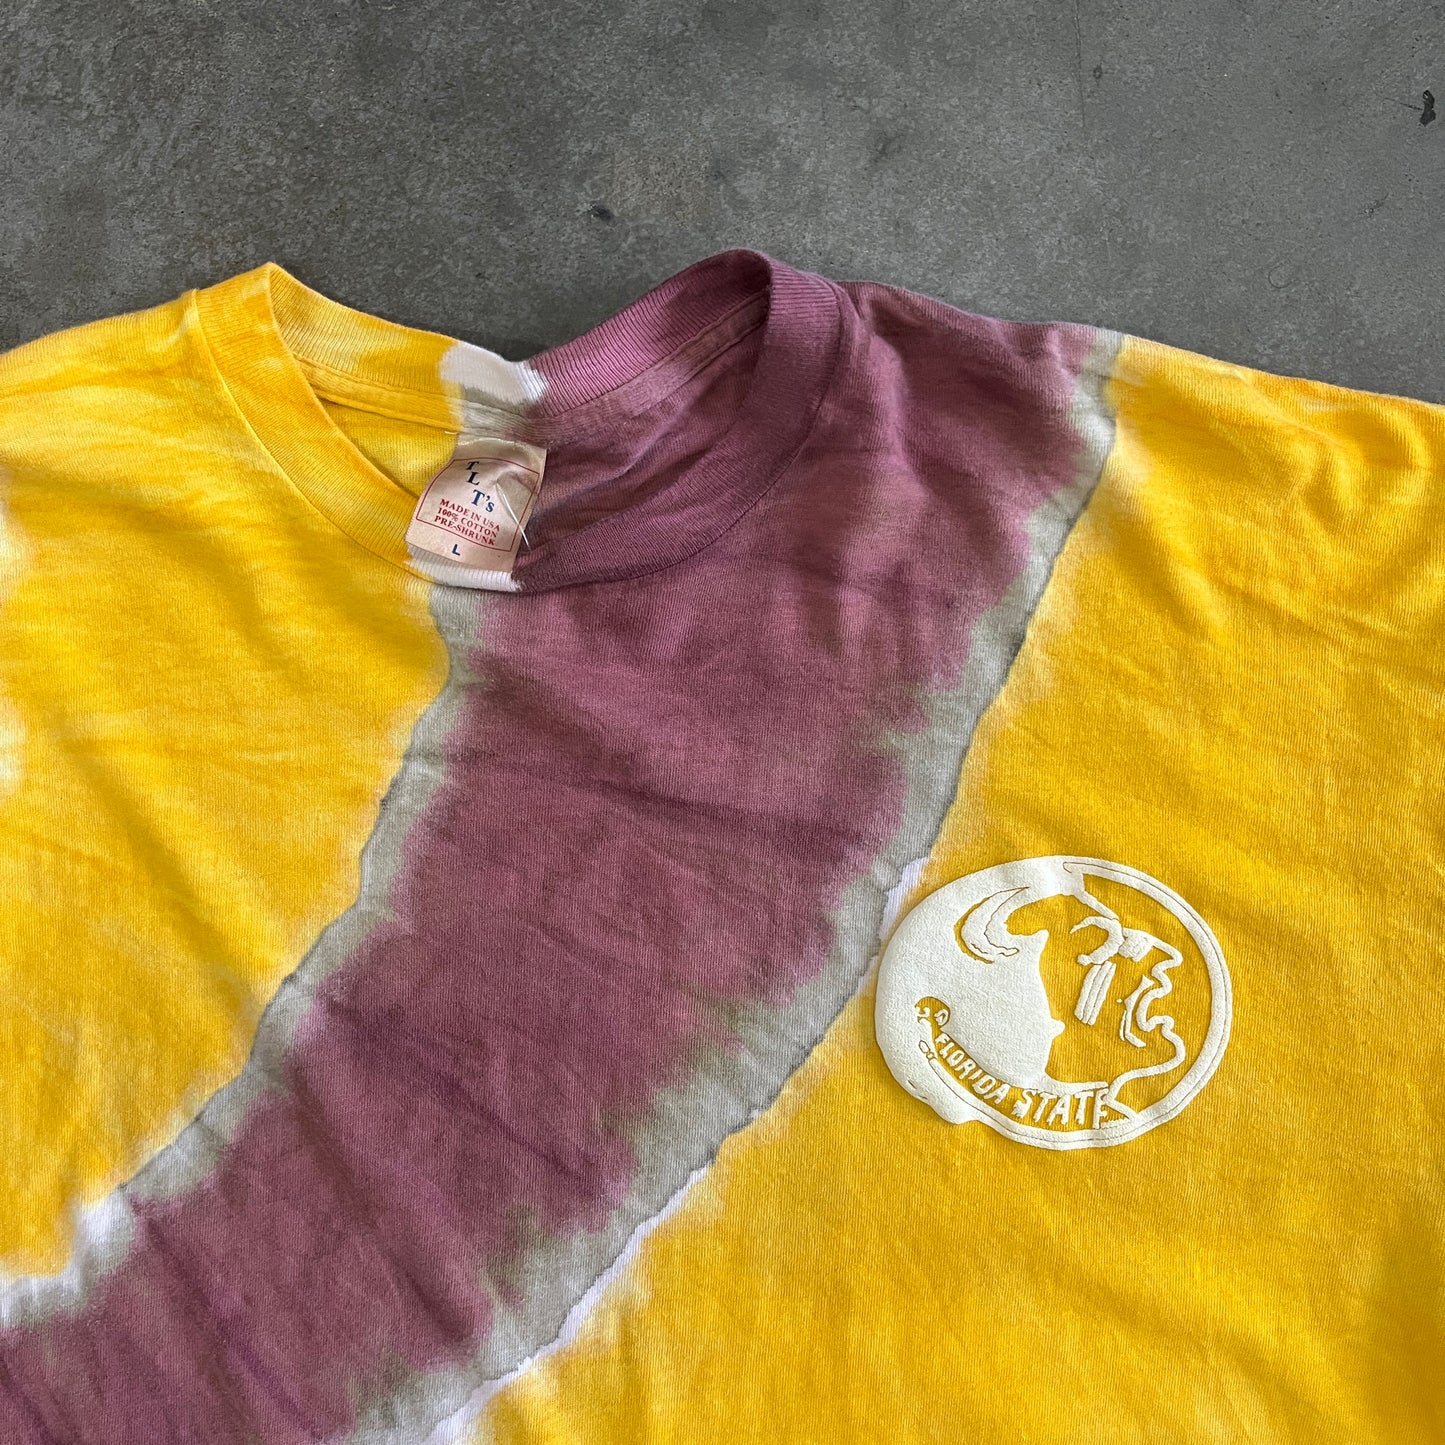 FSU Tie Dye Shirt - XL